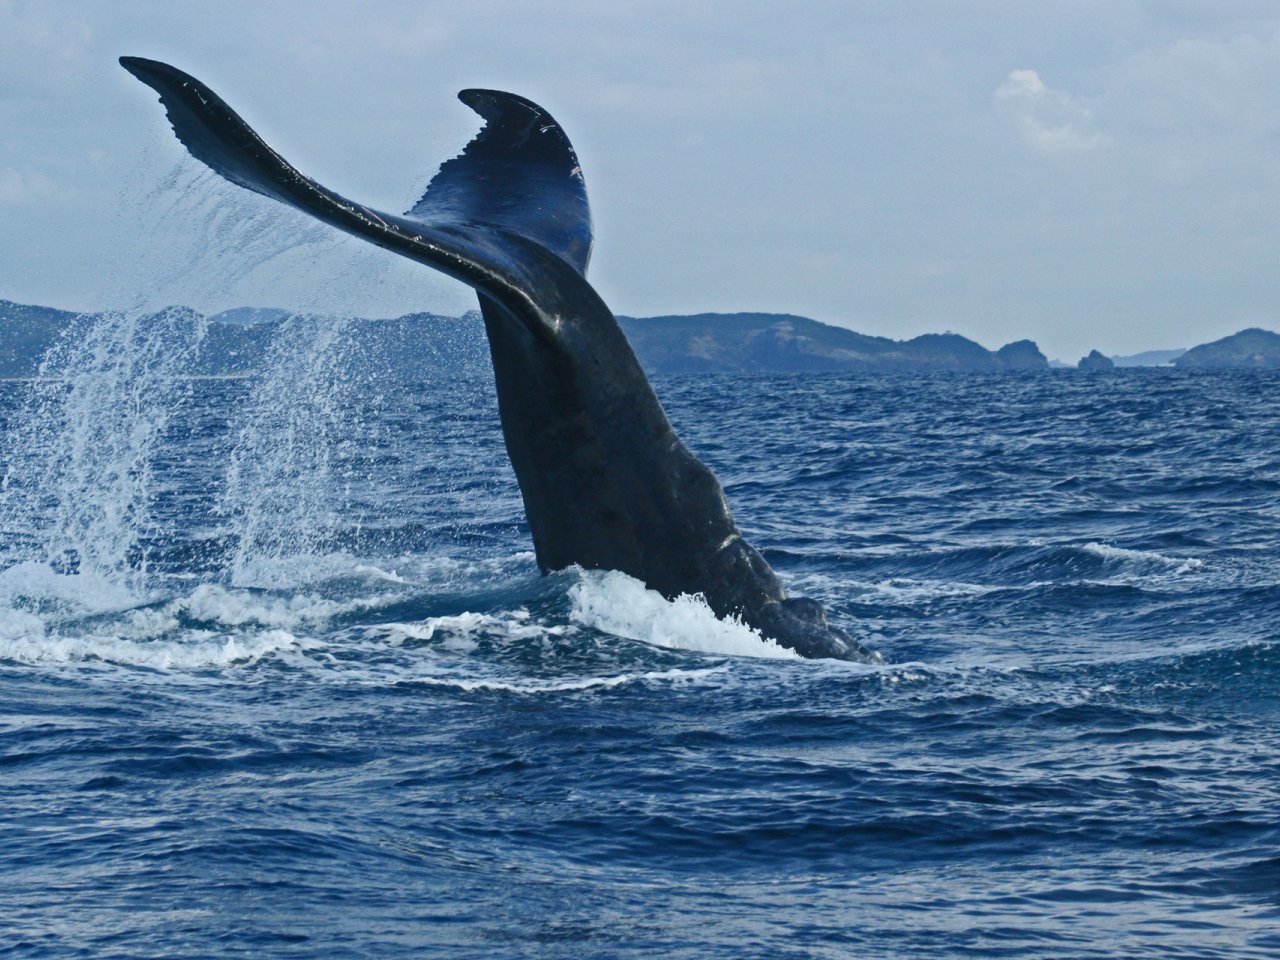 神奈川県三浦市沖で釣り船とクジラが衝突か 他のエリアでもクジラの目撃情報相次ぐ